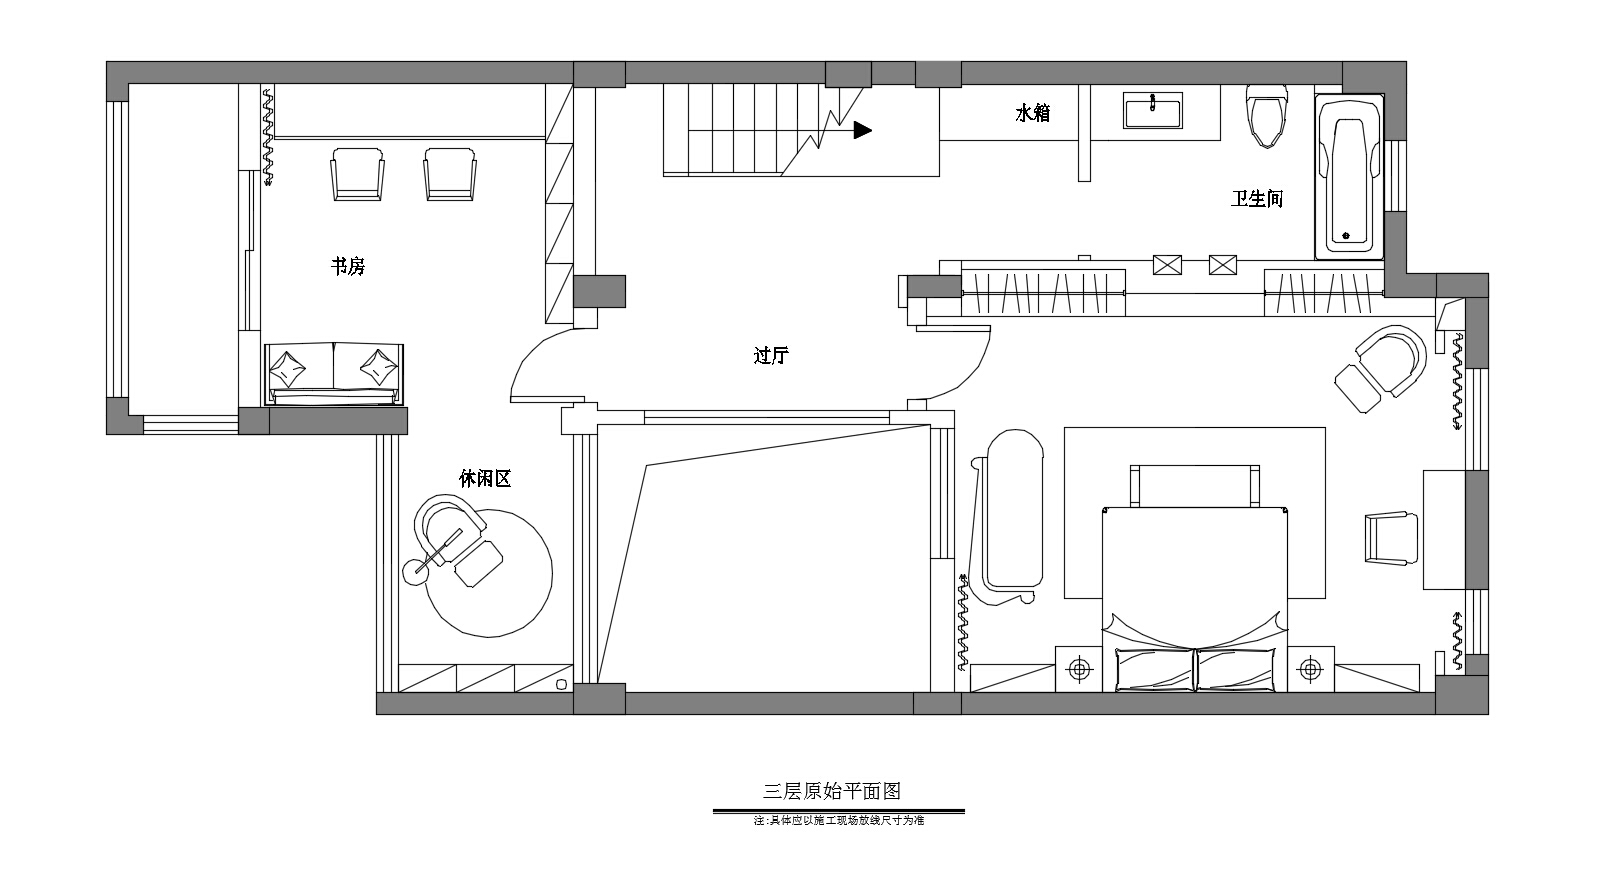 欧式 混搭 别墅 厨房 装修设计 户型图图片来自设计师-崔志广在君临南山 别墅的分享